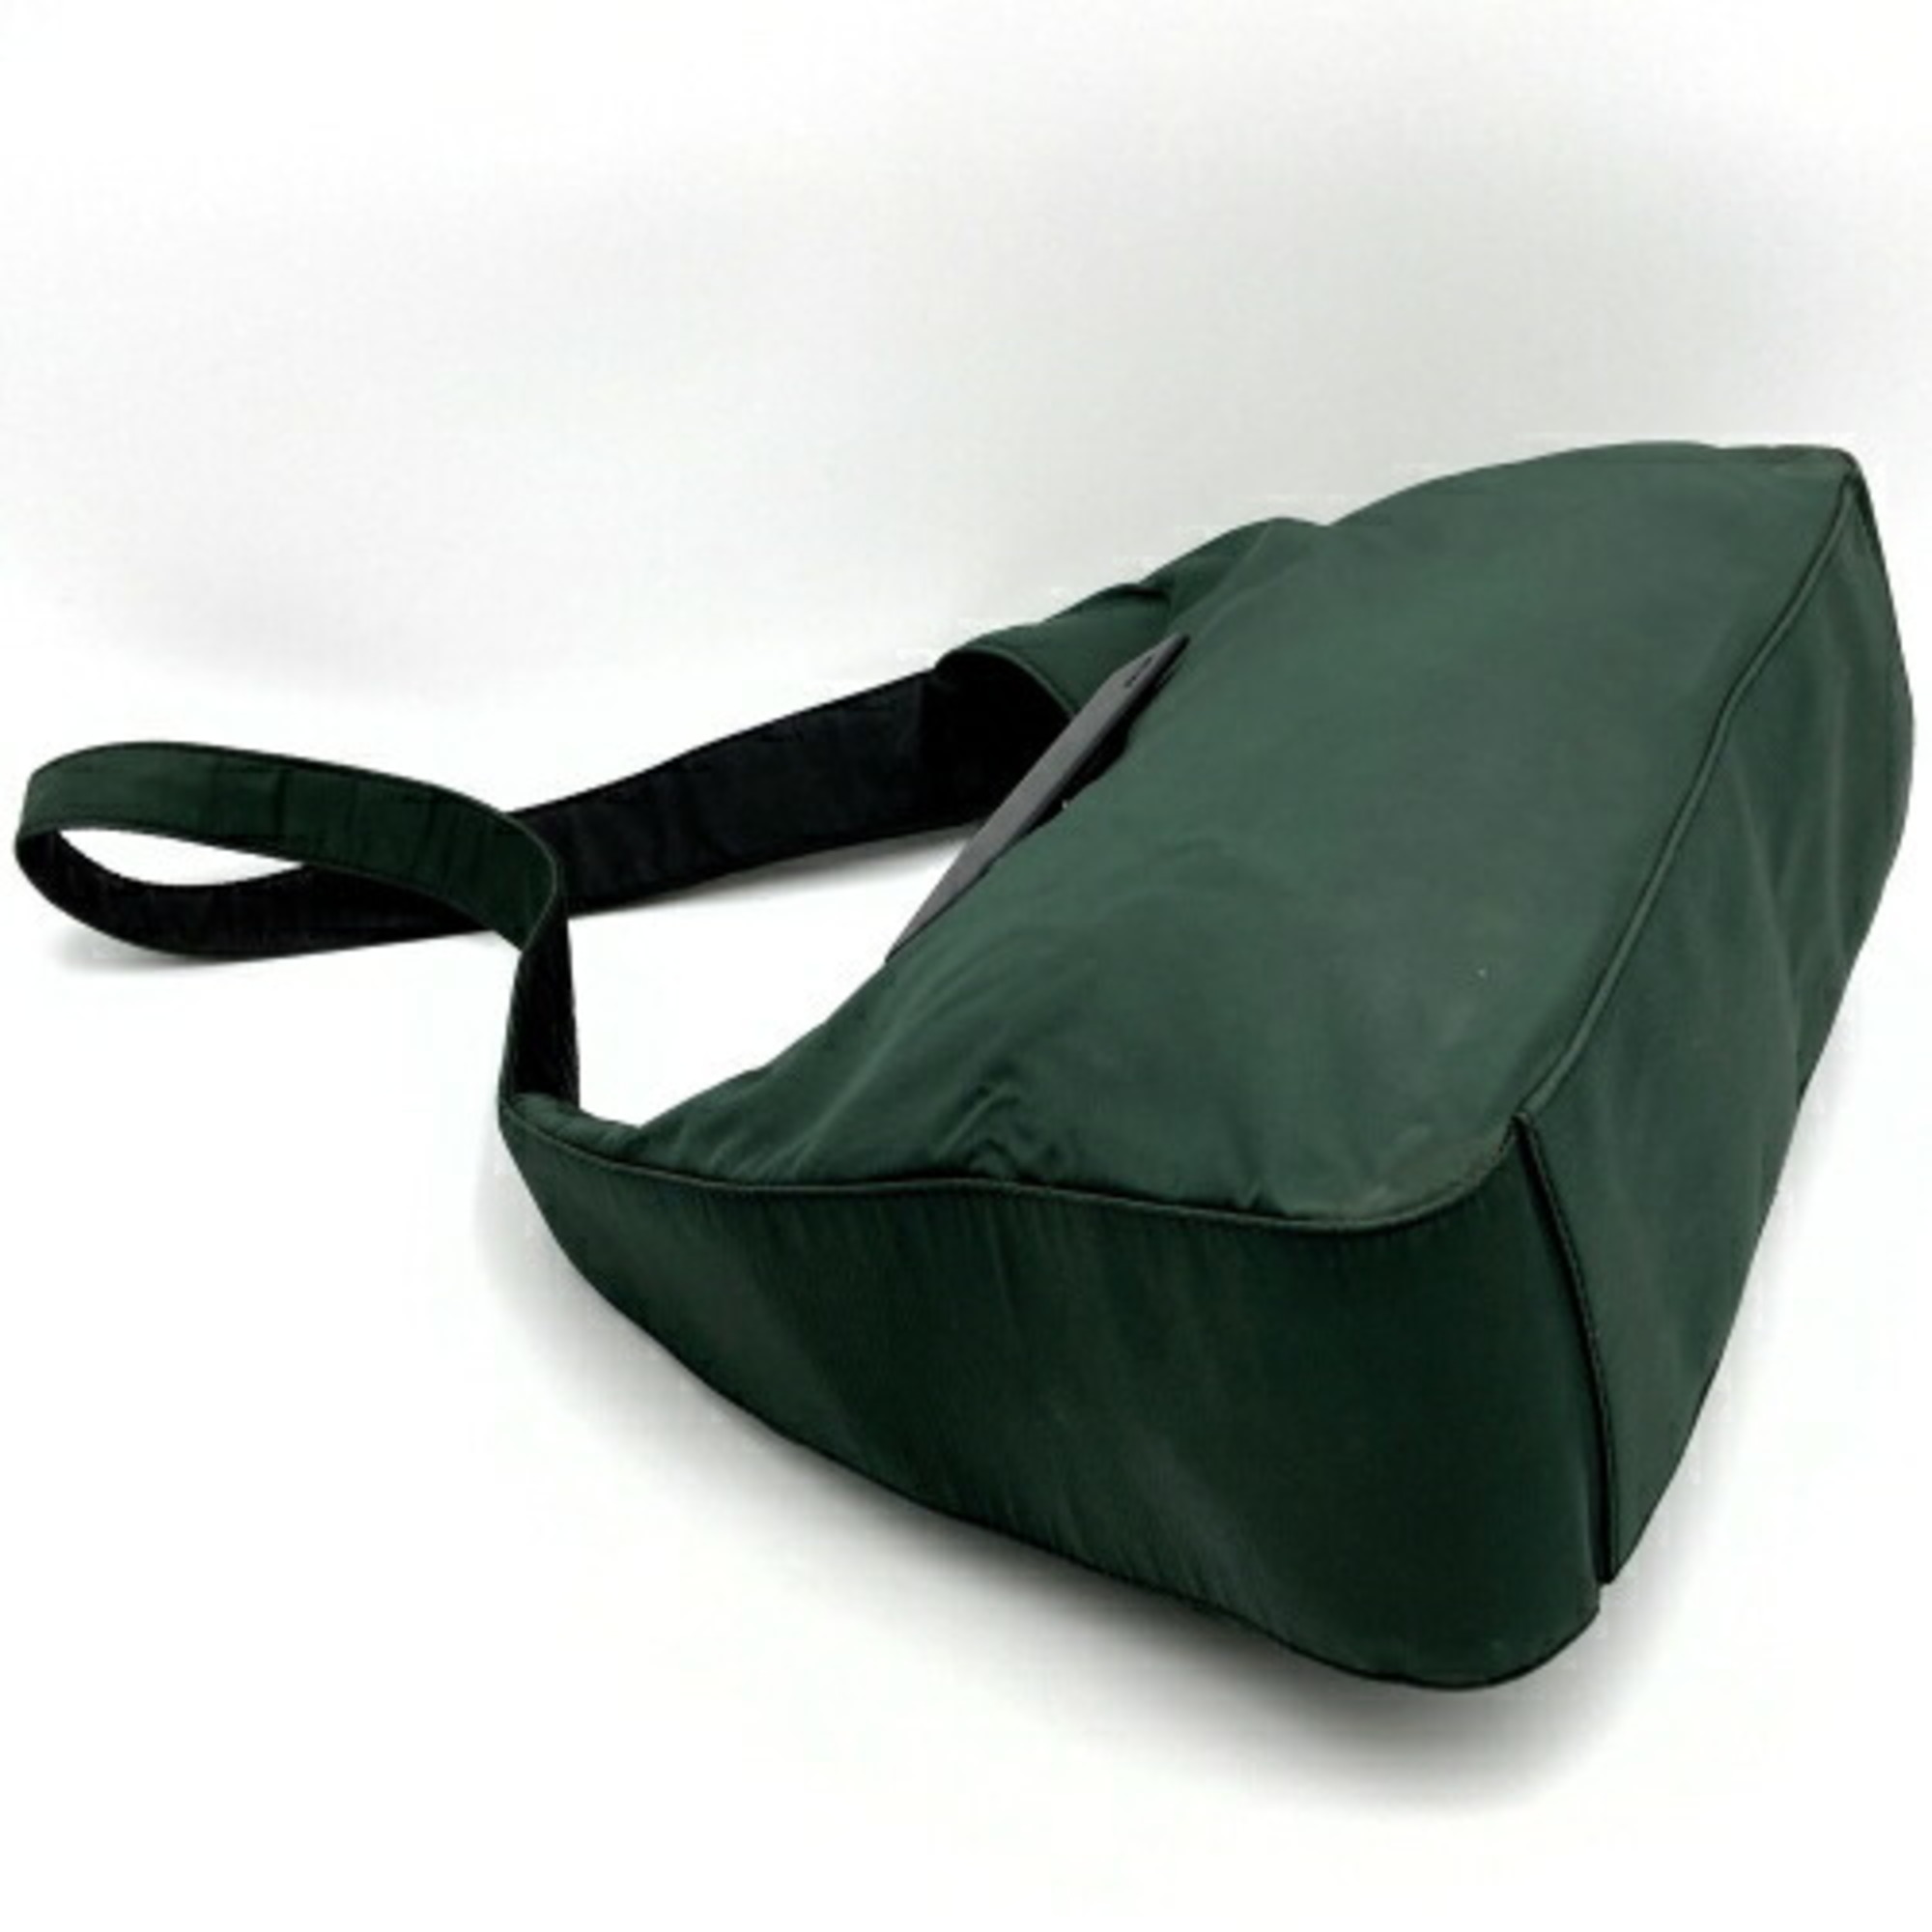 PRADA Prada shoulder bag hobo nylon green khaki ladies men USED IT4SEZJYVKBE